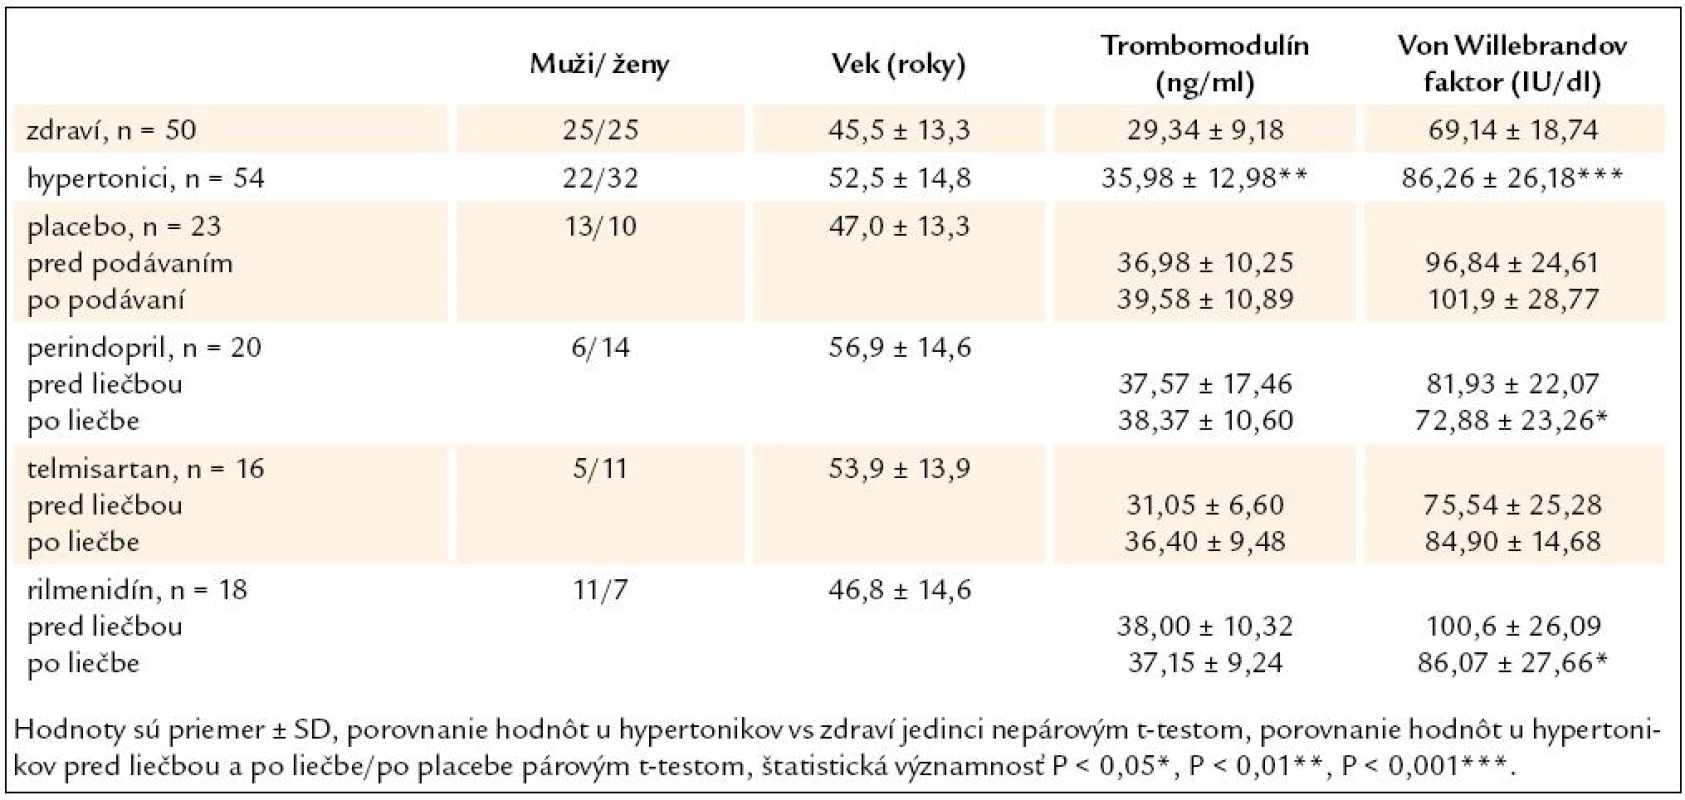 Vek a hodnoty endotelových markerov u zdravých jedincov a v sledovaných skupinách hypertonikov.